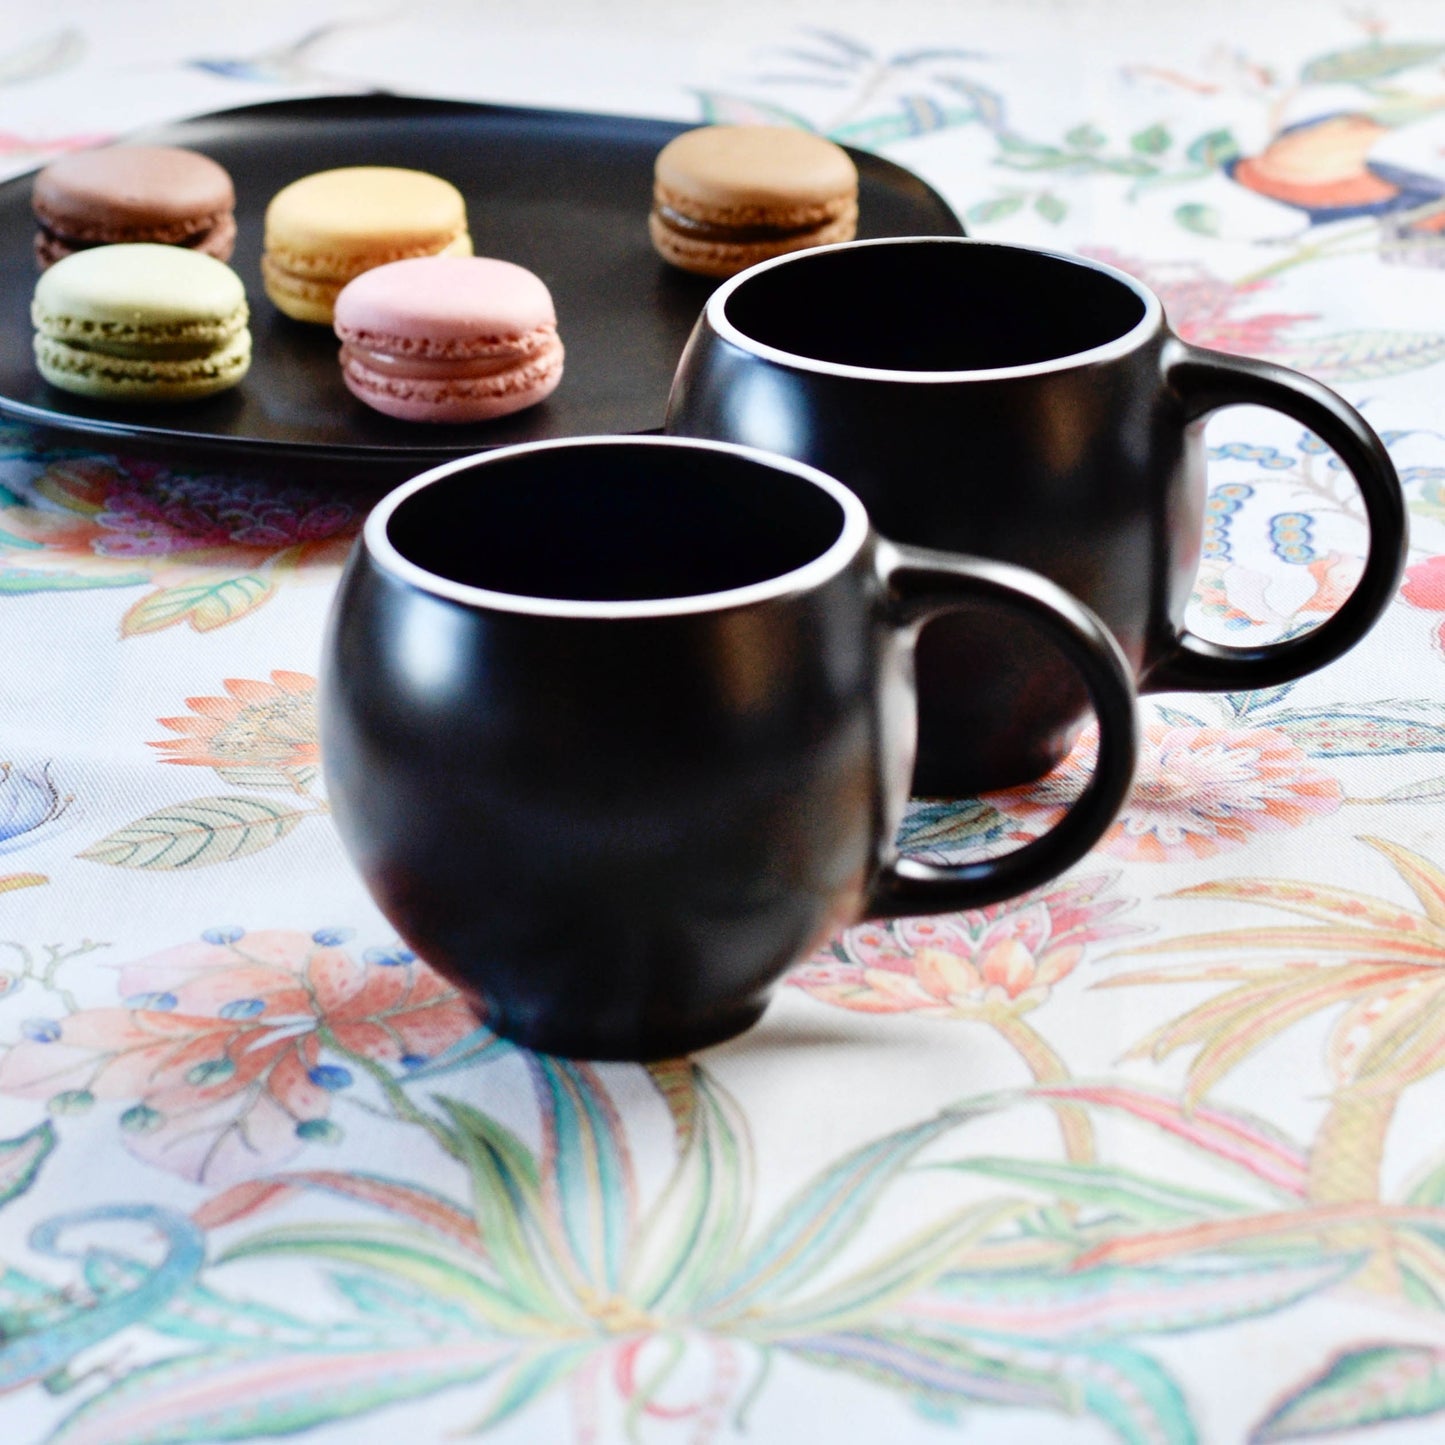 EVA teacups set of 2 - Black matte